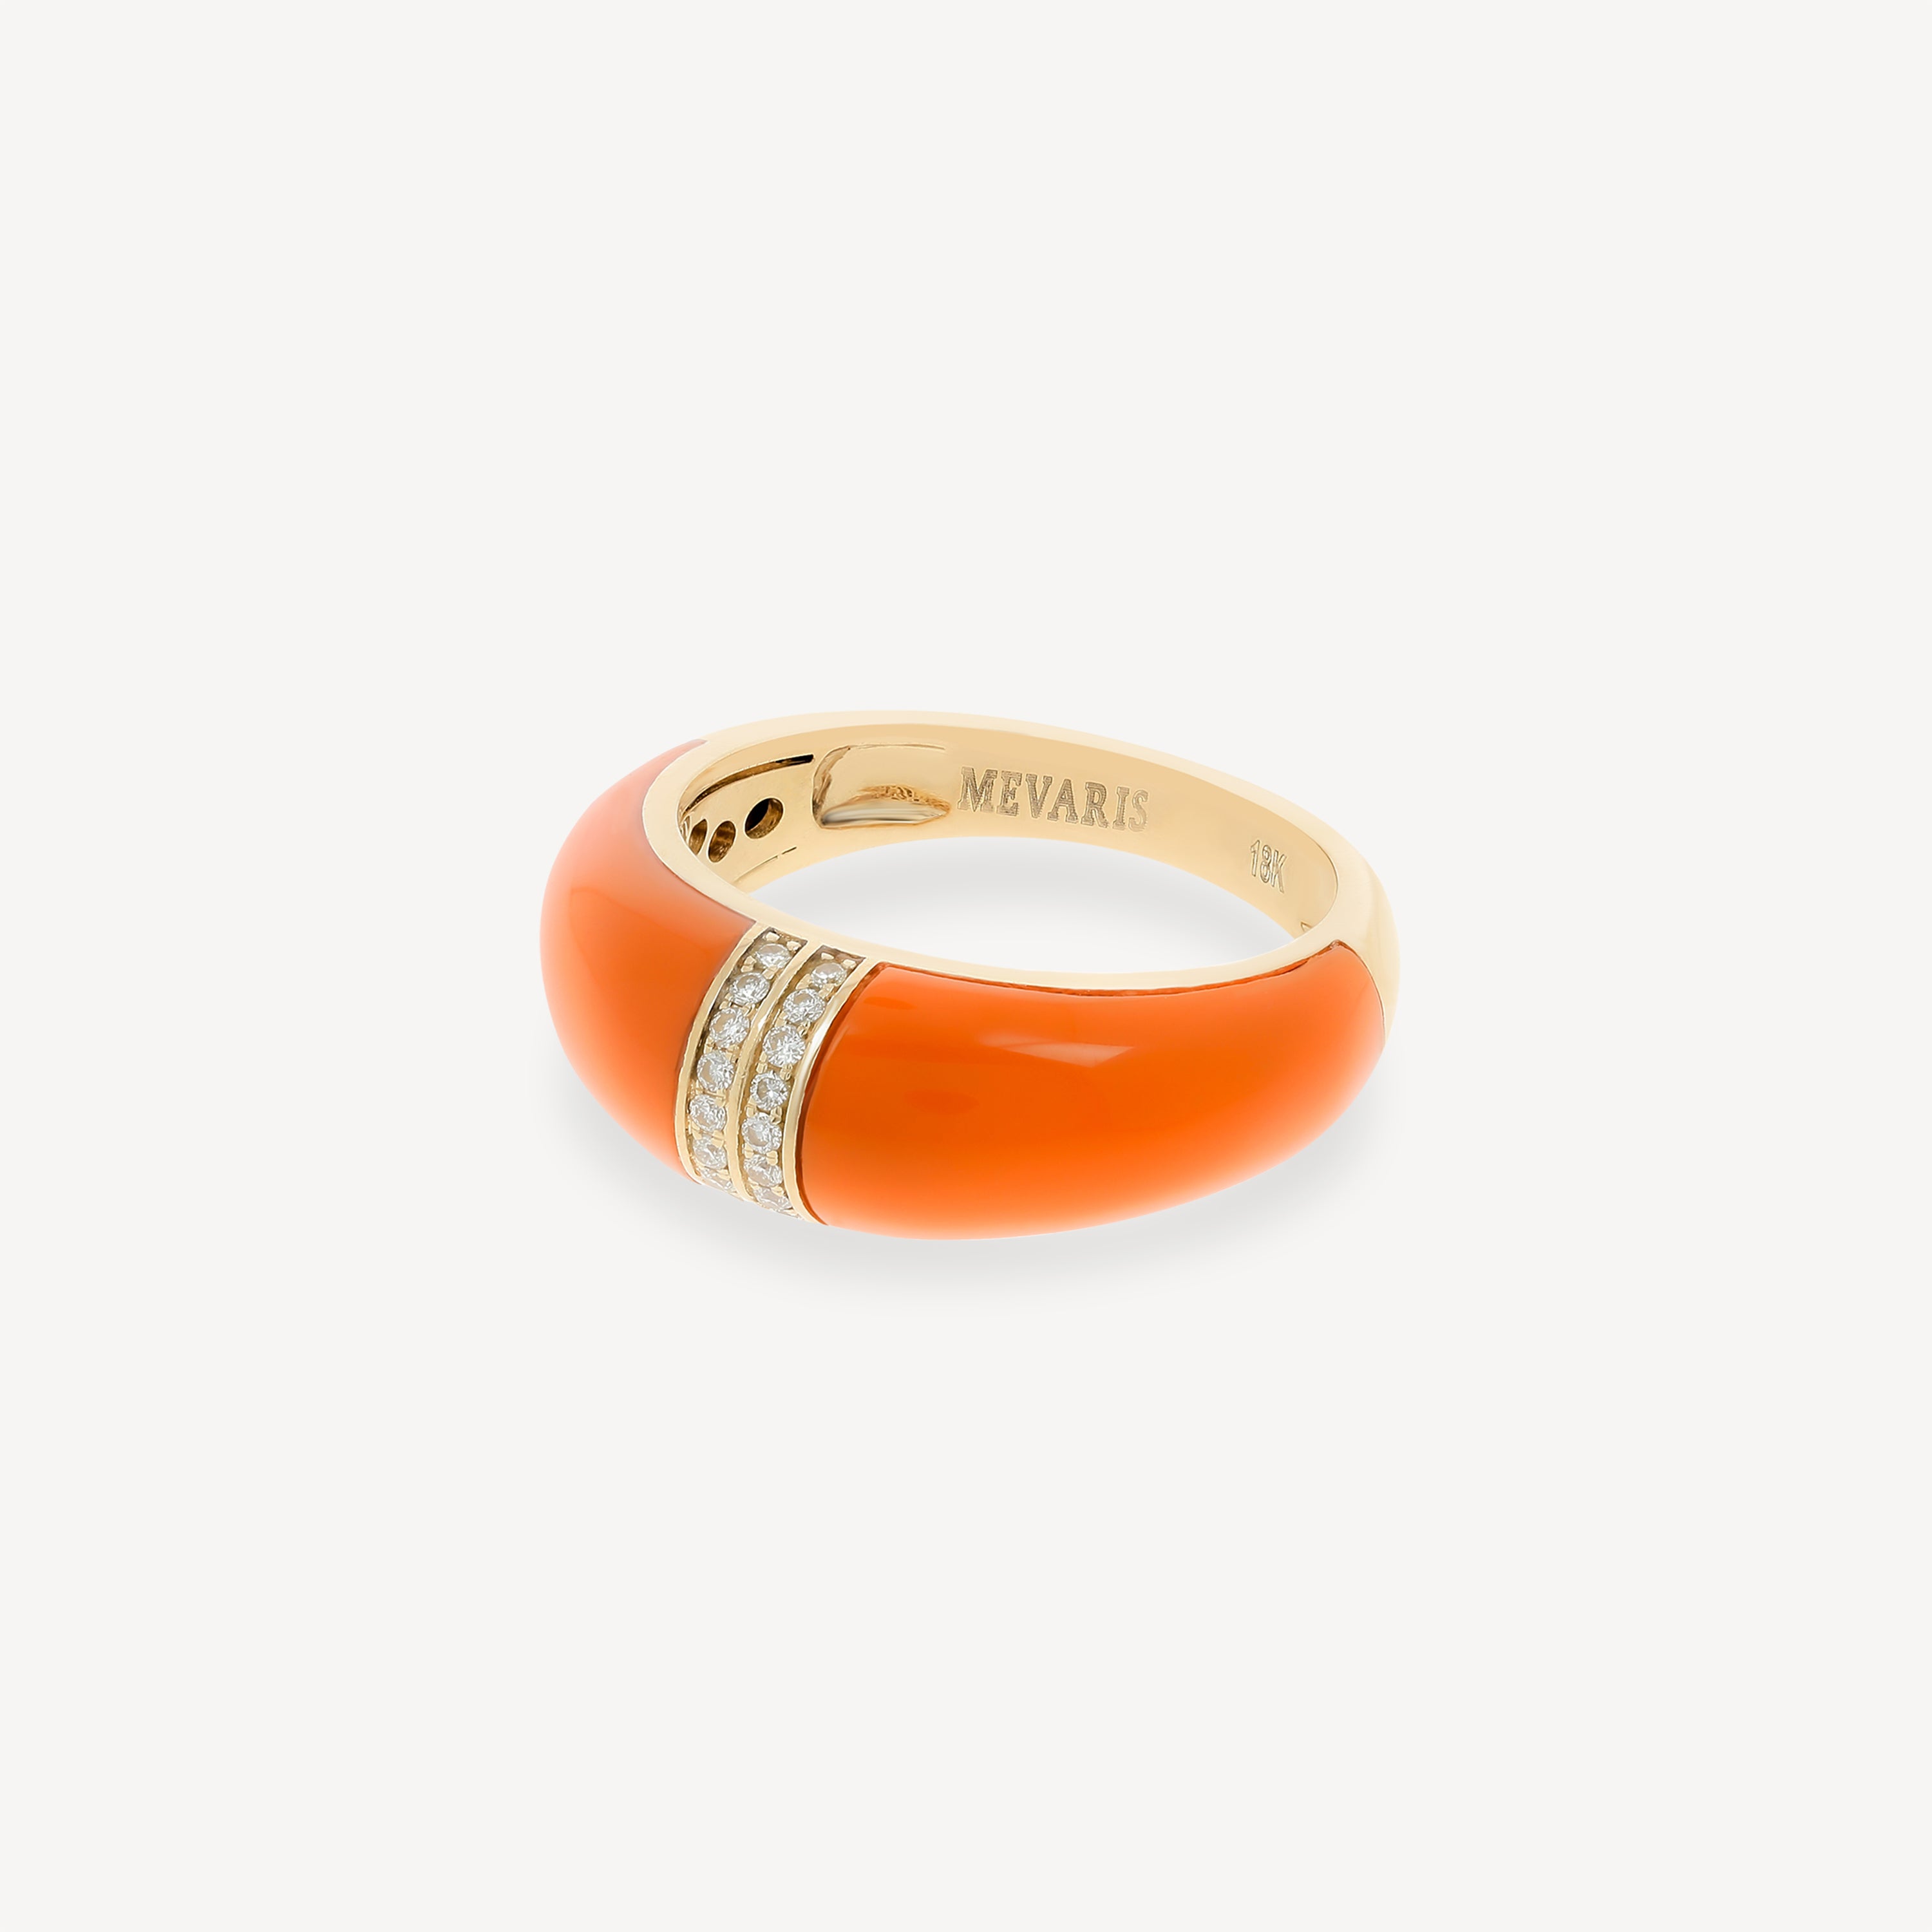 Moderner orangefarbener Ring